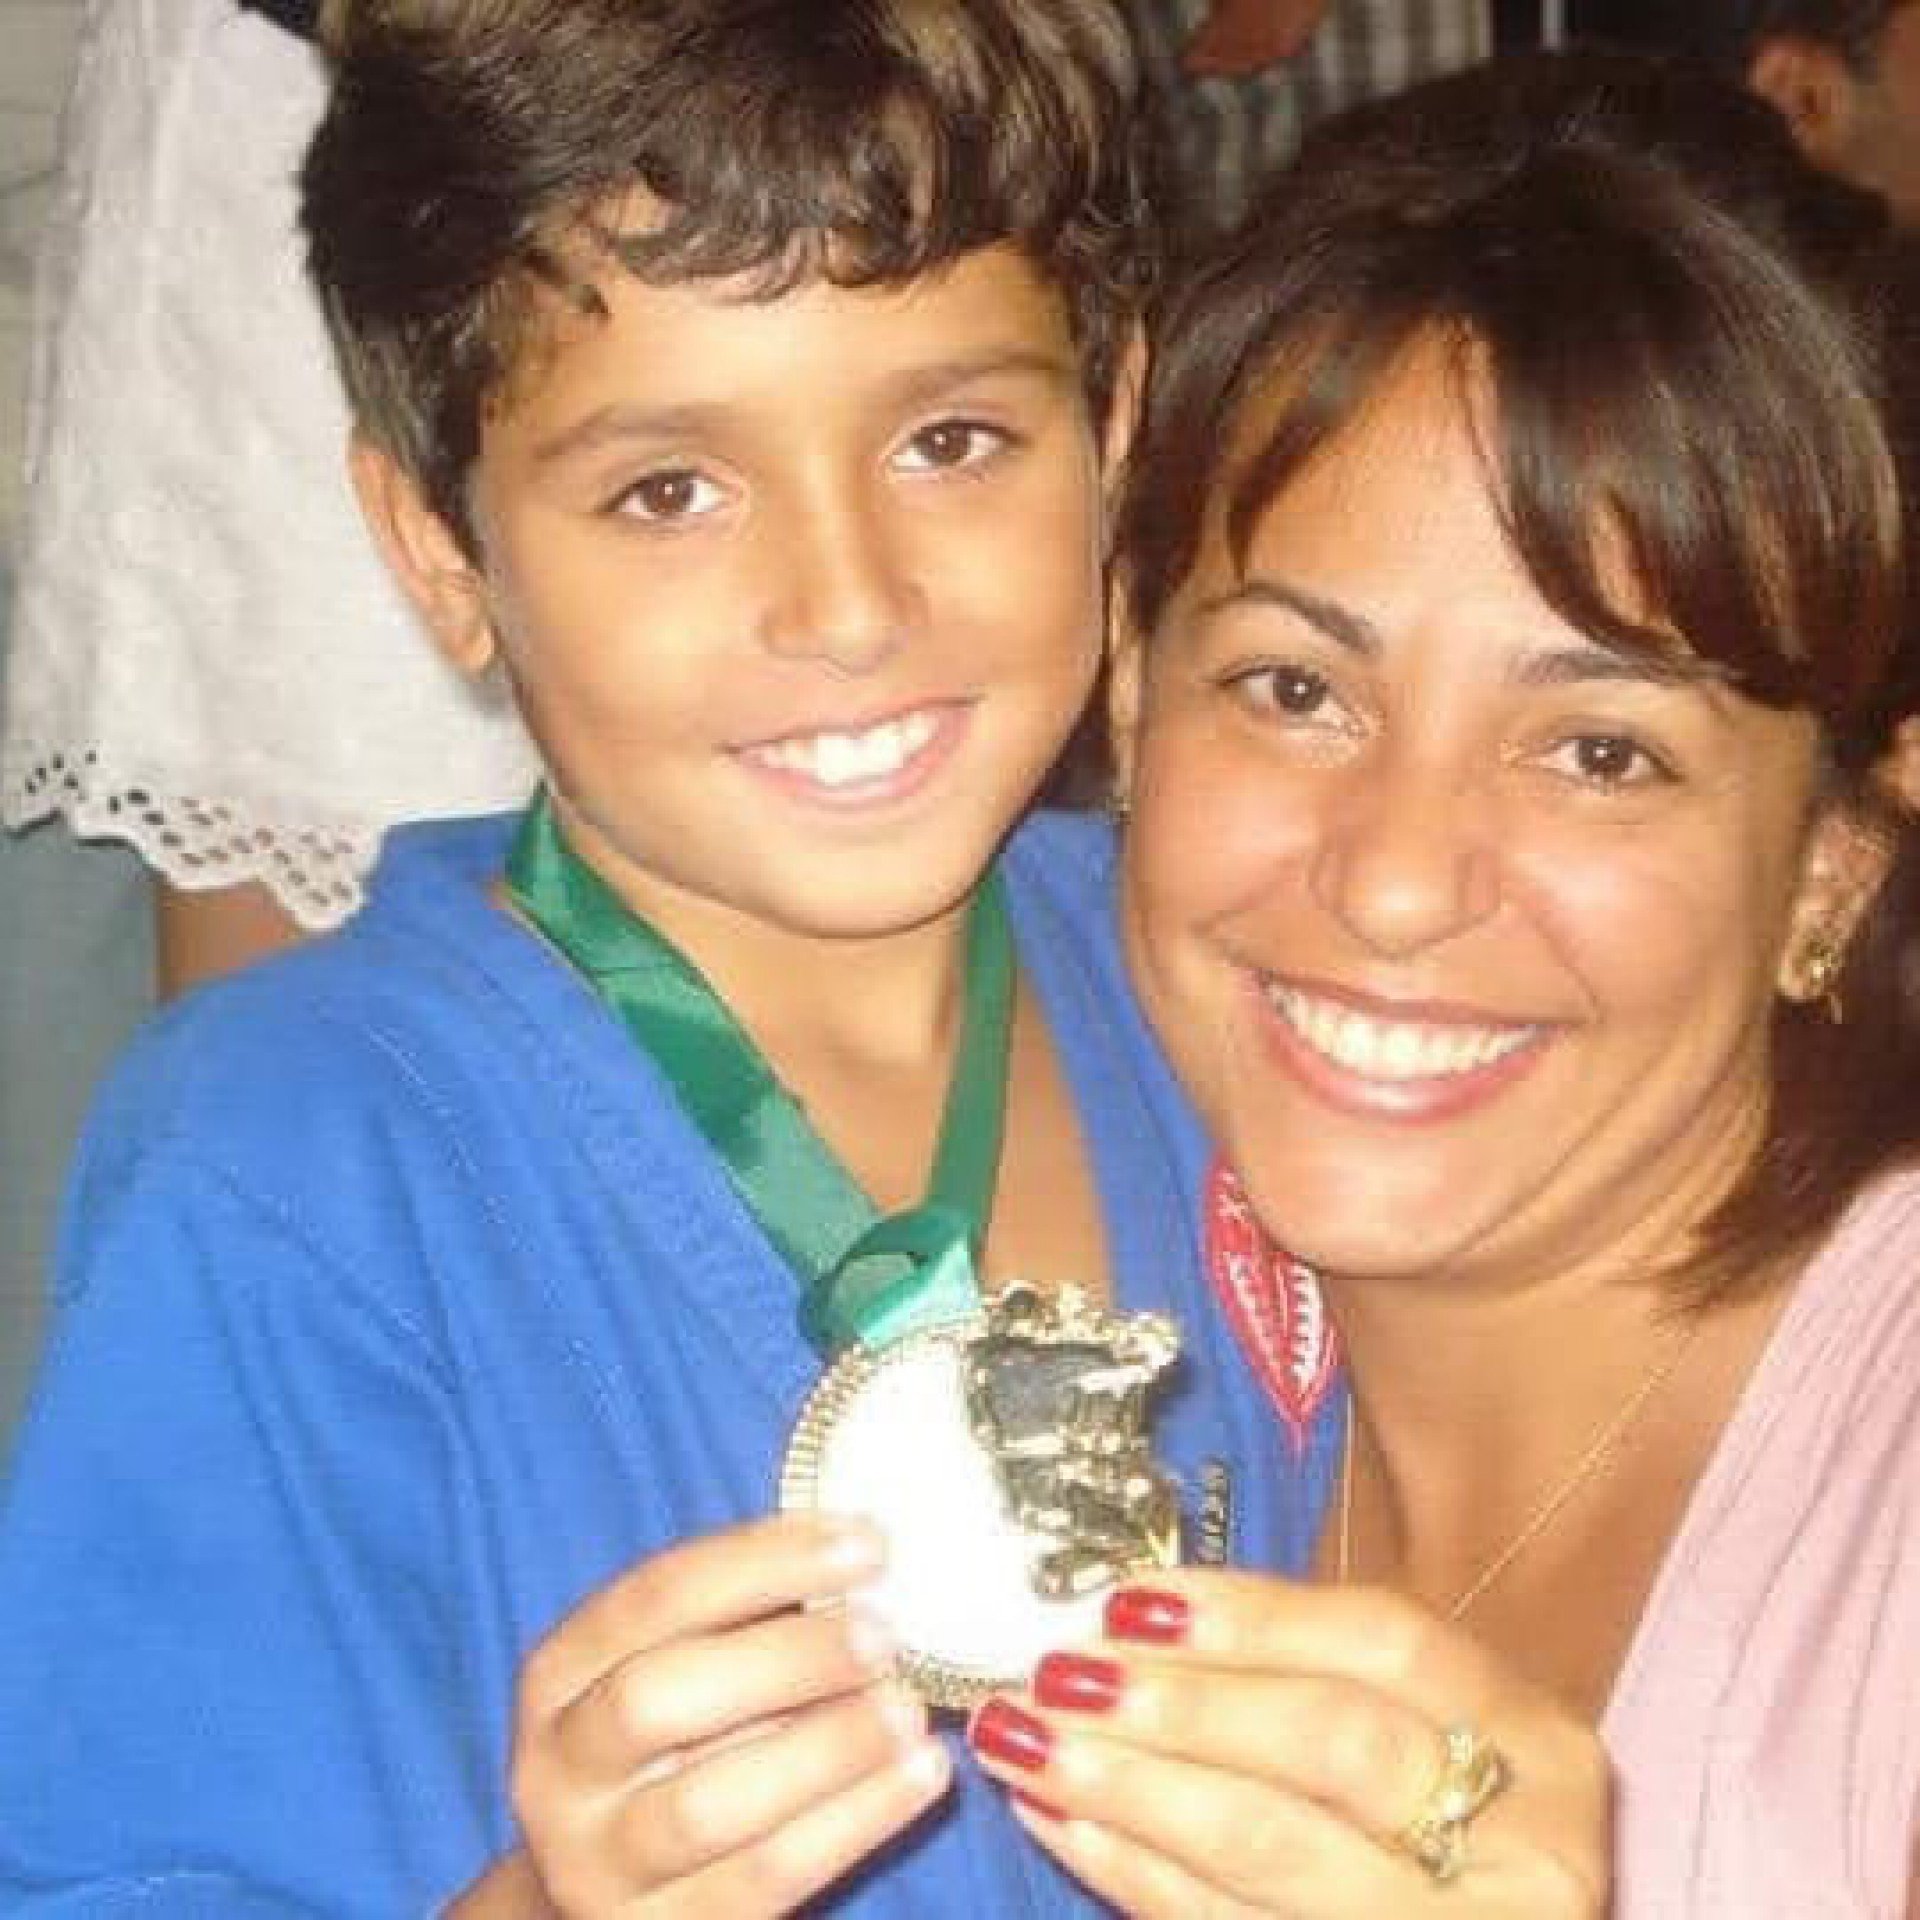 Rafael ao lado de sua mãe, com uma medalha conquistada em um torneio de jiu-jitsu quando era criança - Reprodução/Instagram